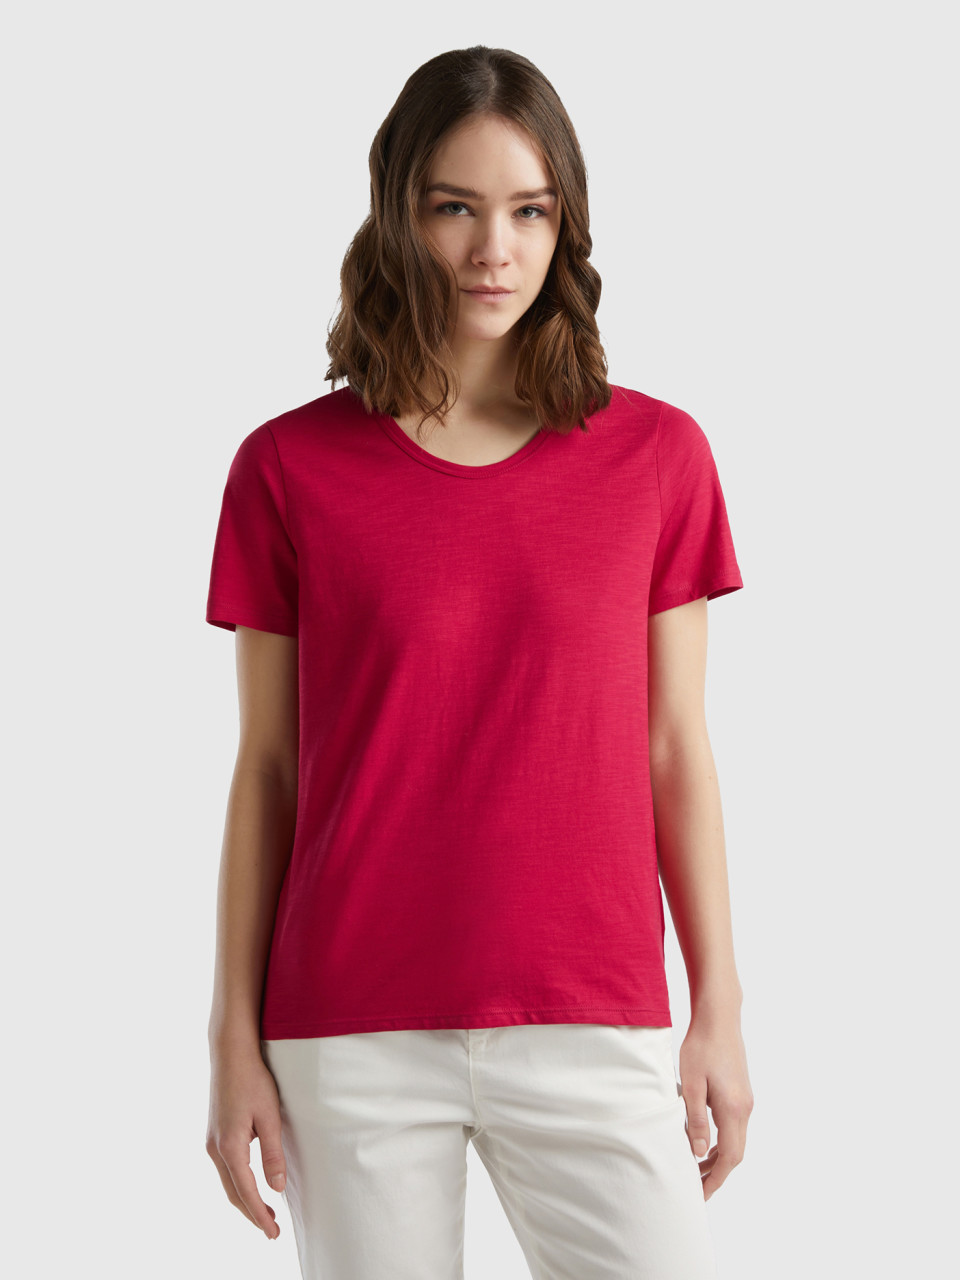 Benetton, Short Sleeve T-shirt Lightweight Cotton, Cyclamen, Women